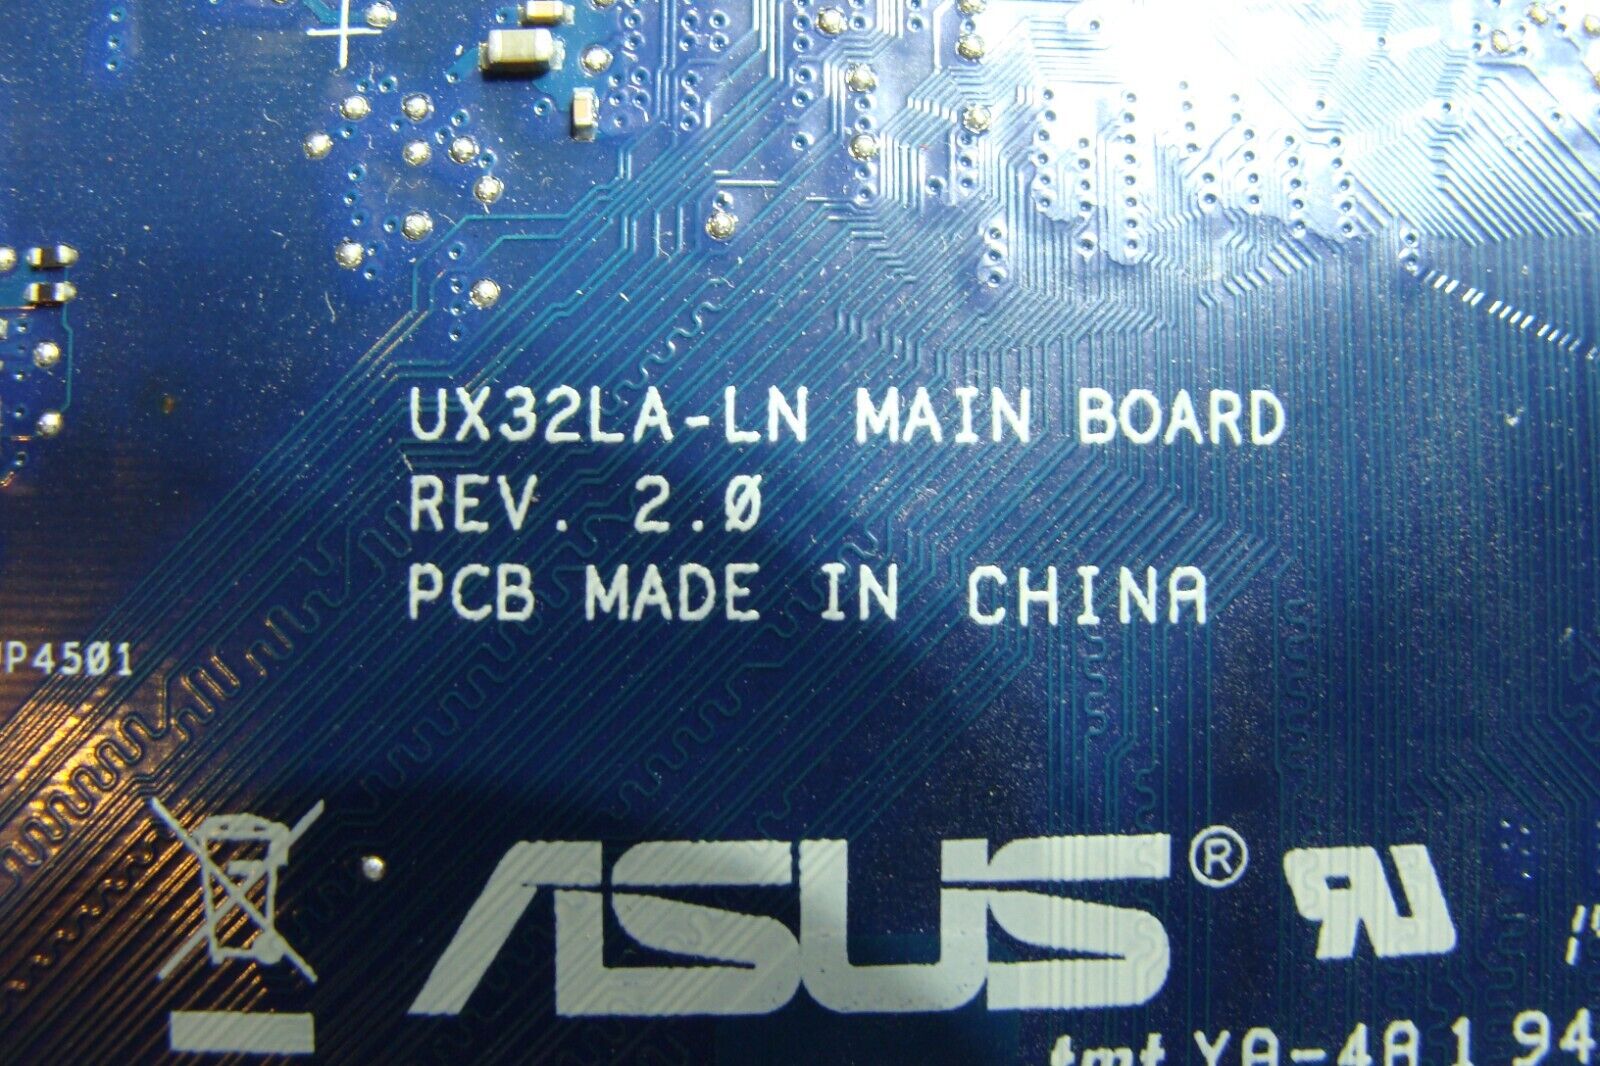 Asus Ultrabook 13.3